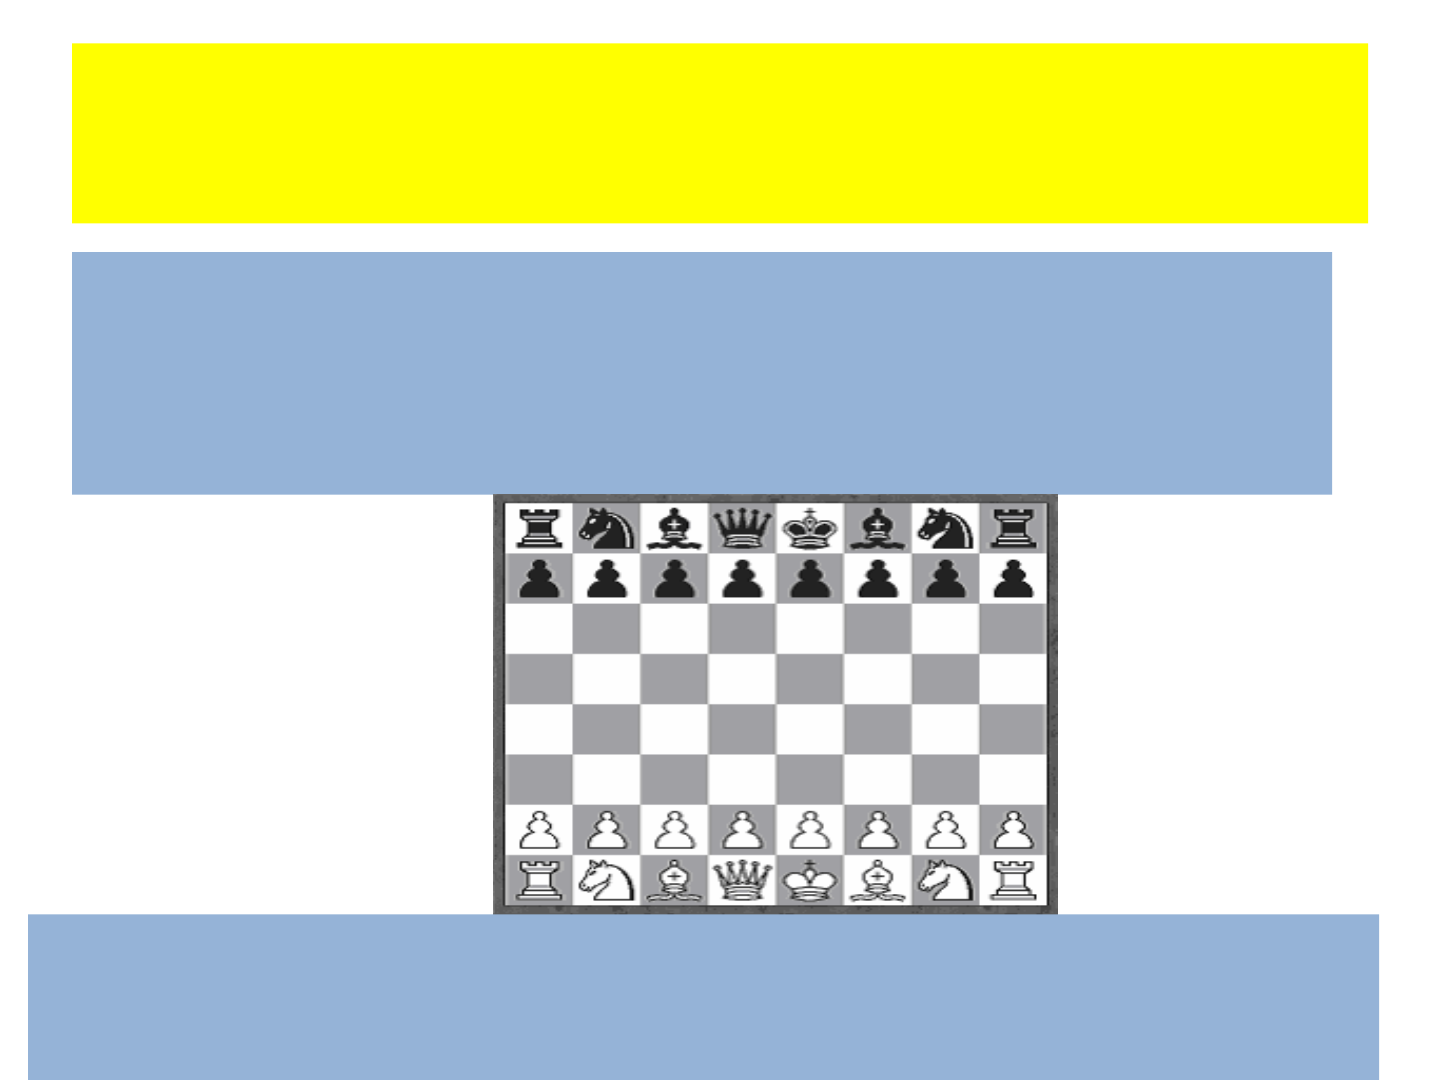 Assinale a alternativa correta em relação às peças do Xadrez: a) A